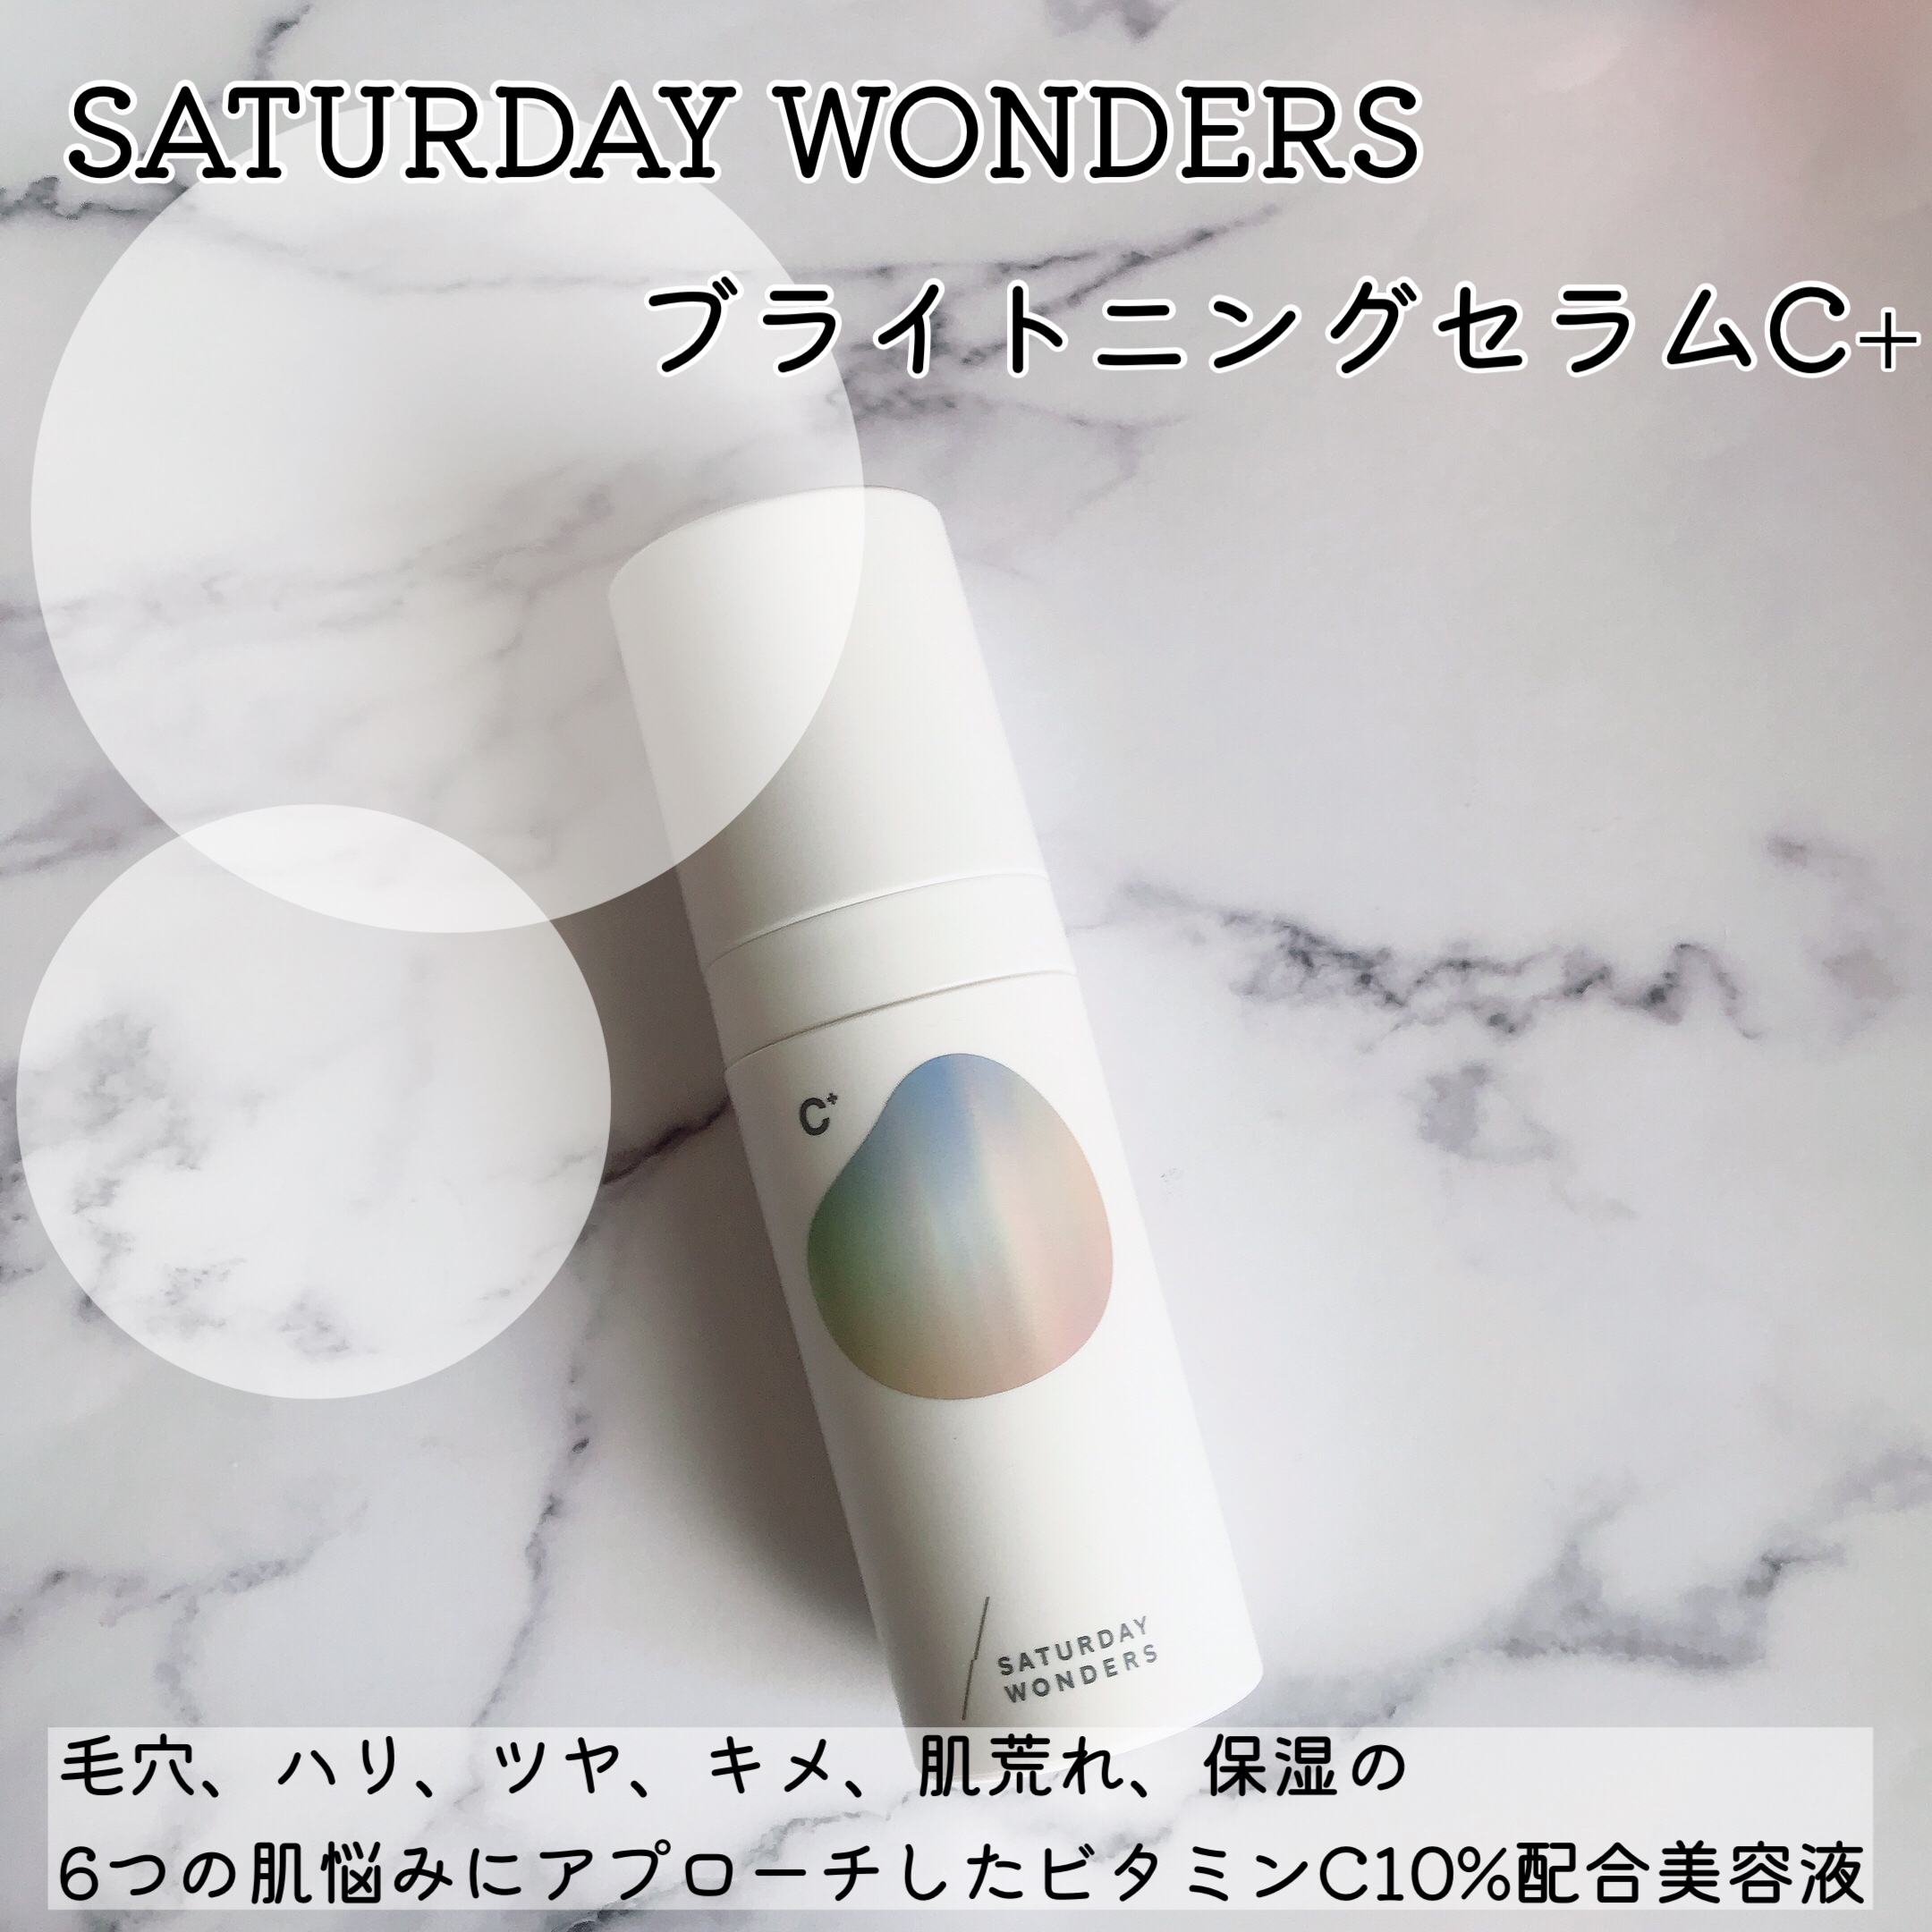 Saturday Wonders(サタデーワンダーズ) ブライトニングセラムC＋の良い点・メリットに関するMarukoさんの口コミ画像1